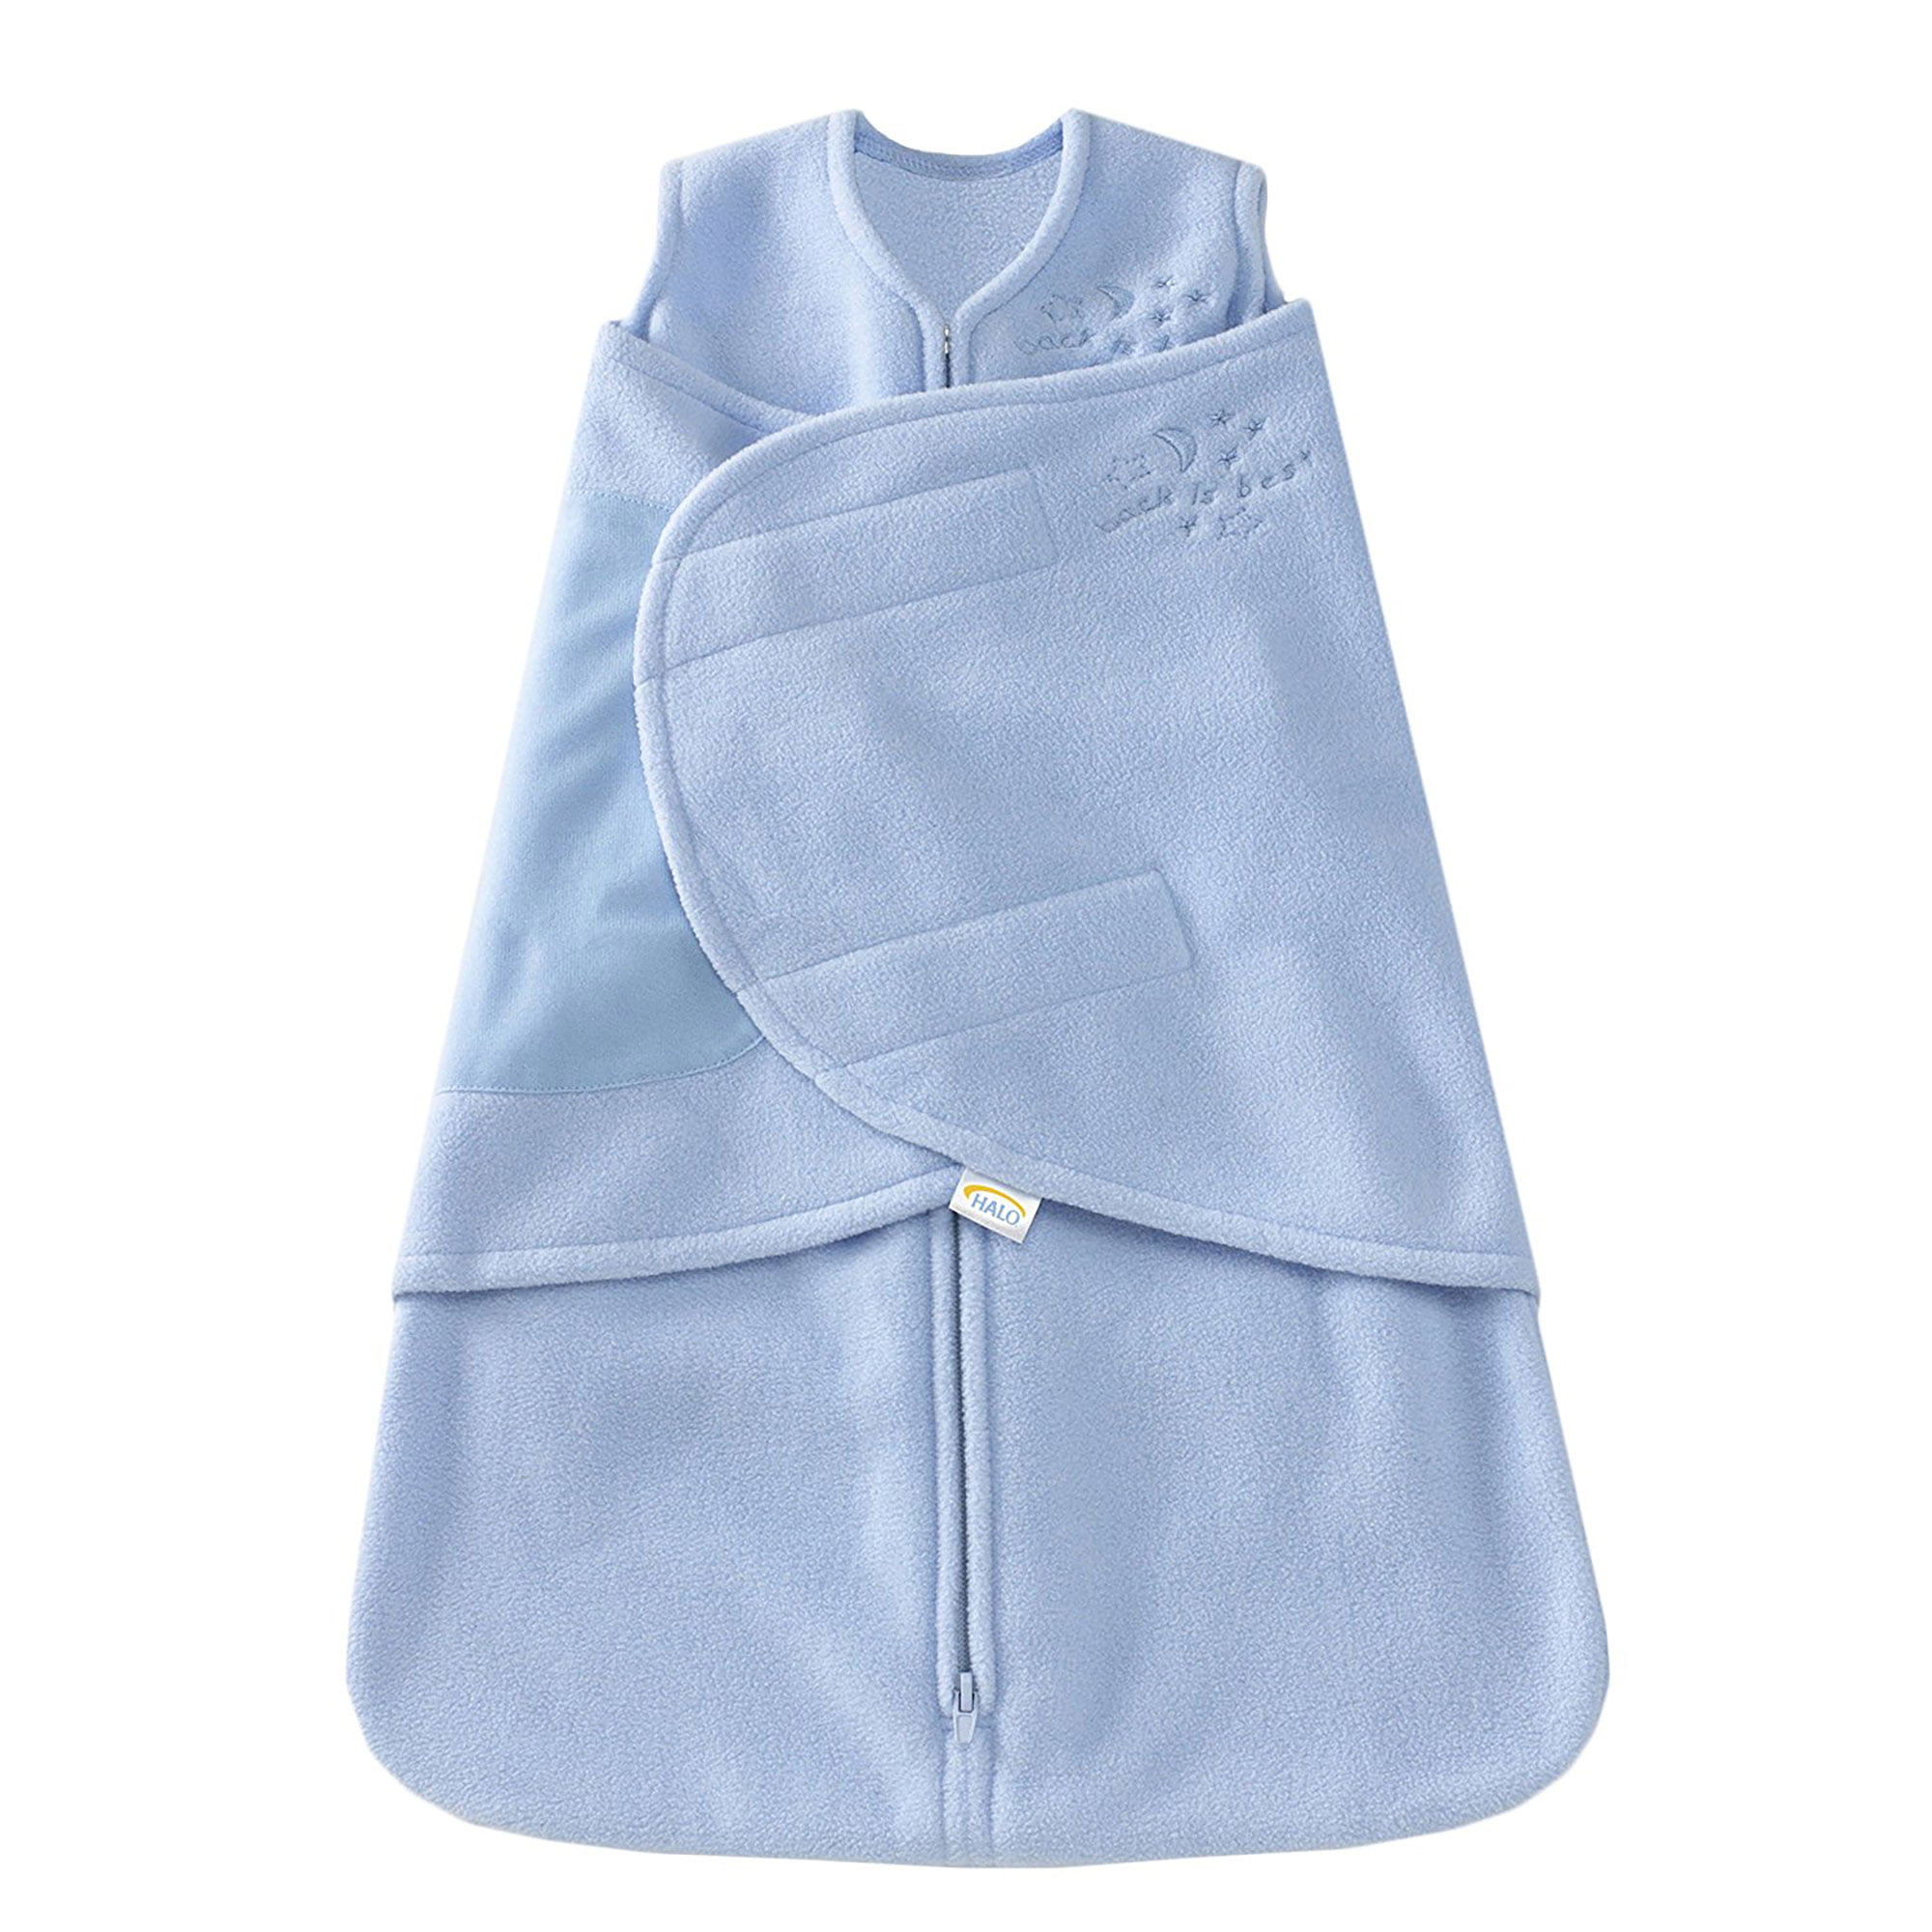 HALO SleepSack Infant FLEECE Wearable Blanket 2-Pack Bundles 